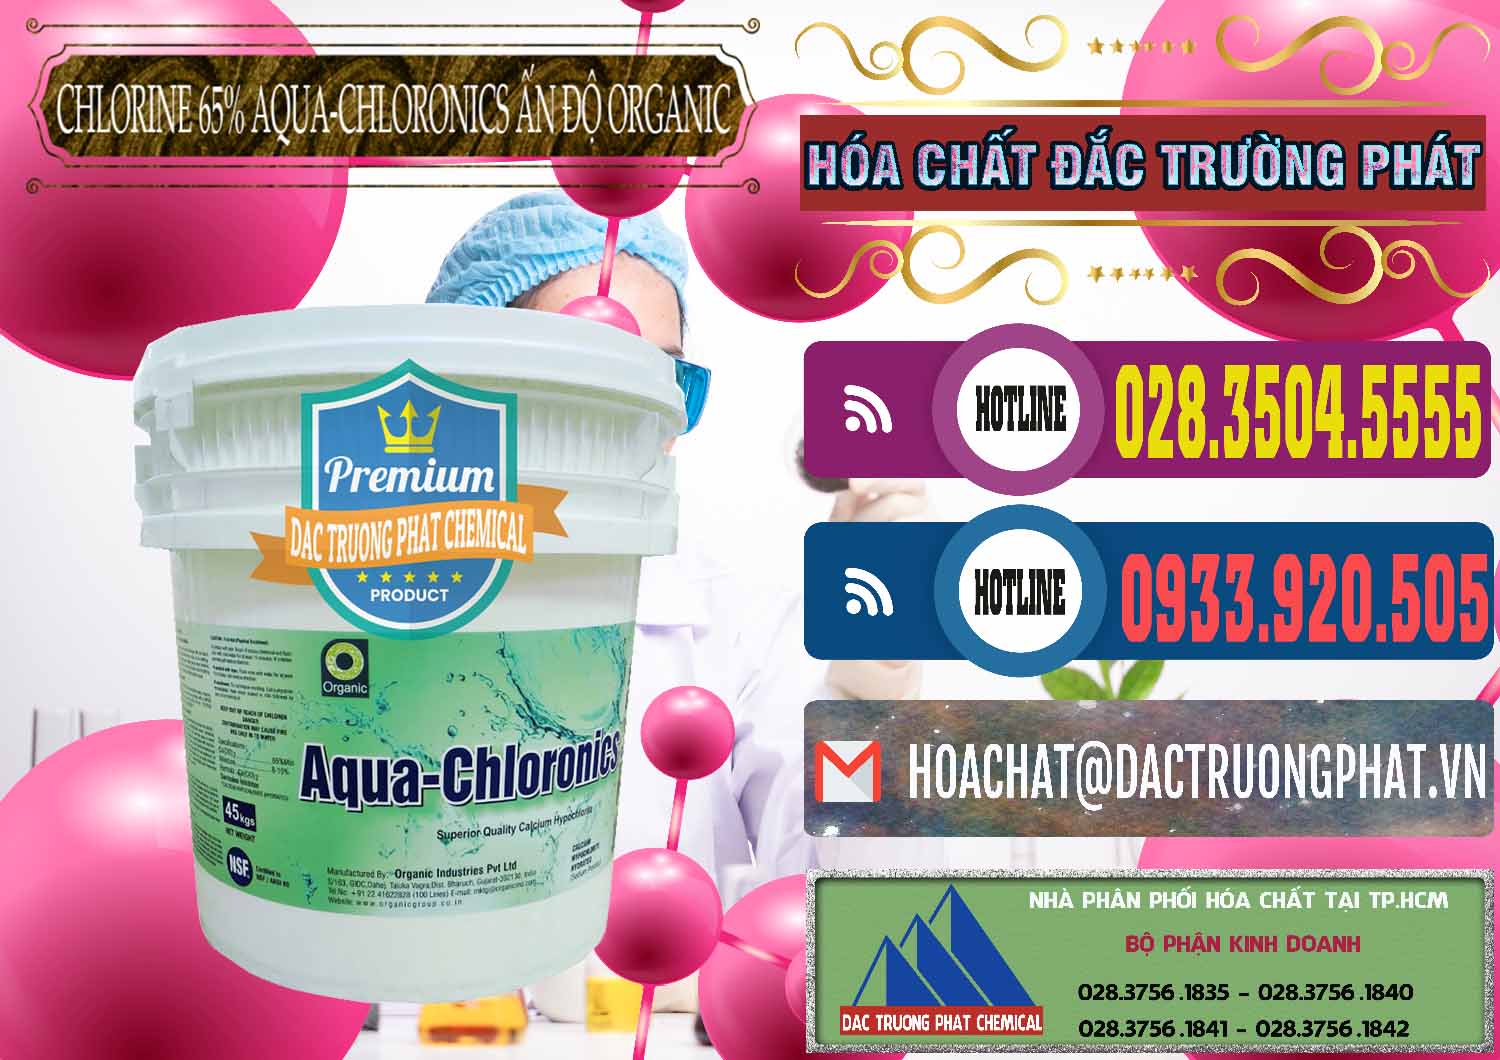 Nơi chuyên bán - cung cấp Chlorine – Clorin 65% Aqua-Chloronics Ấn Độ Organic India - 0210 - Cty phân phối & kinh doanh hóa chất tại TP.HCM - muabanhoachat.com.vn